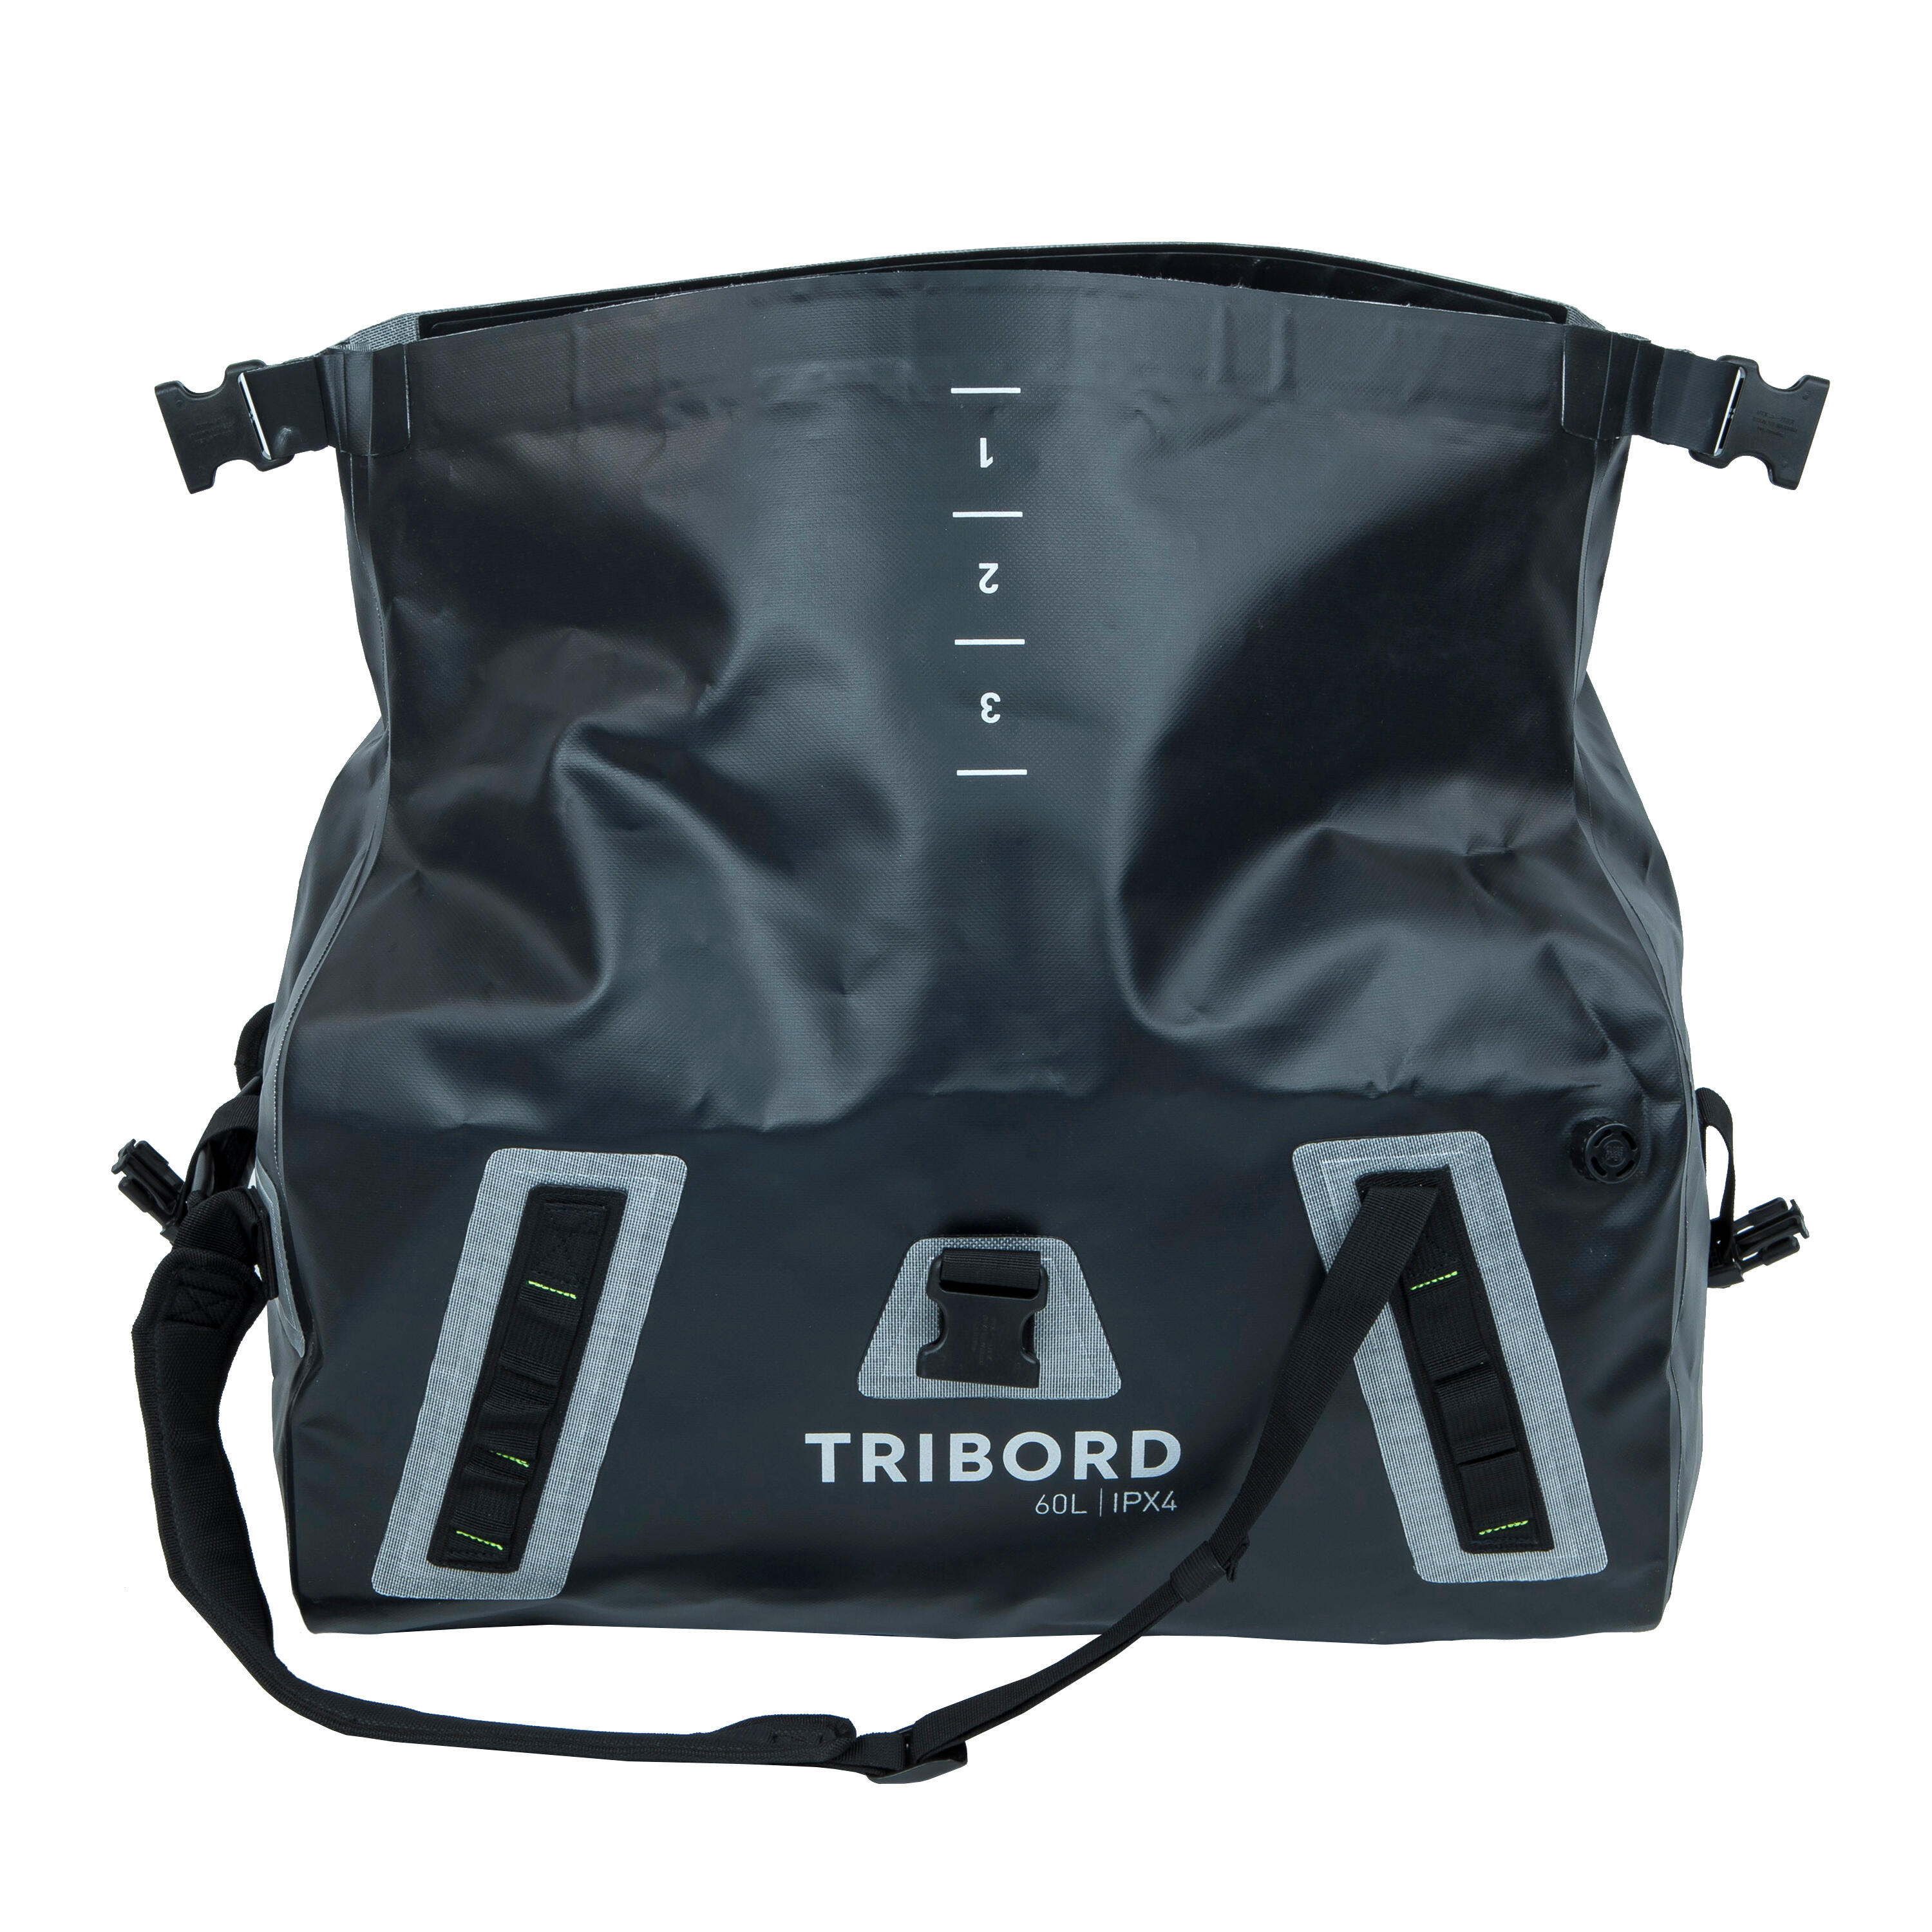 Waterproof duffle bag - travel bag 60 L black 4/8